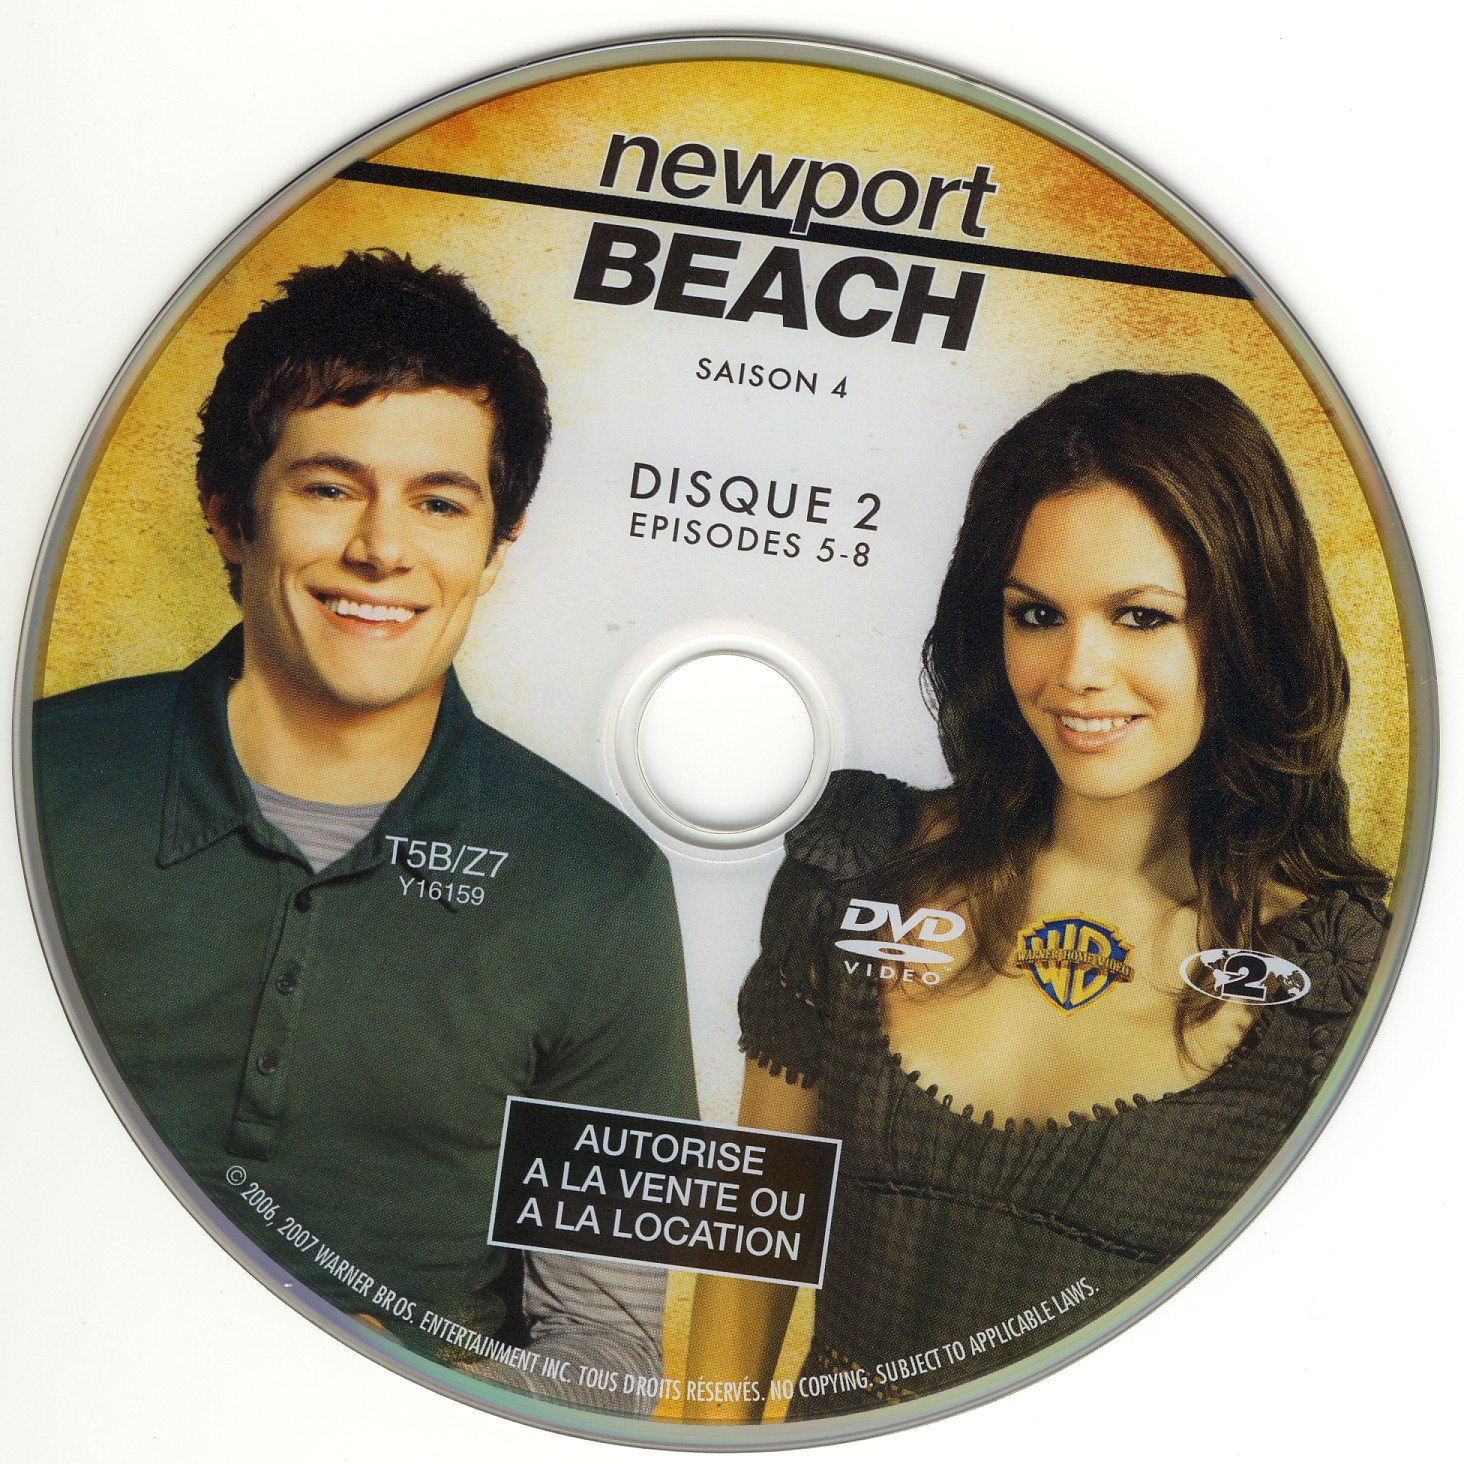 Newport Beach Saison 4 DISC 2